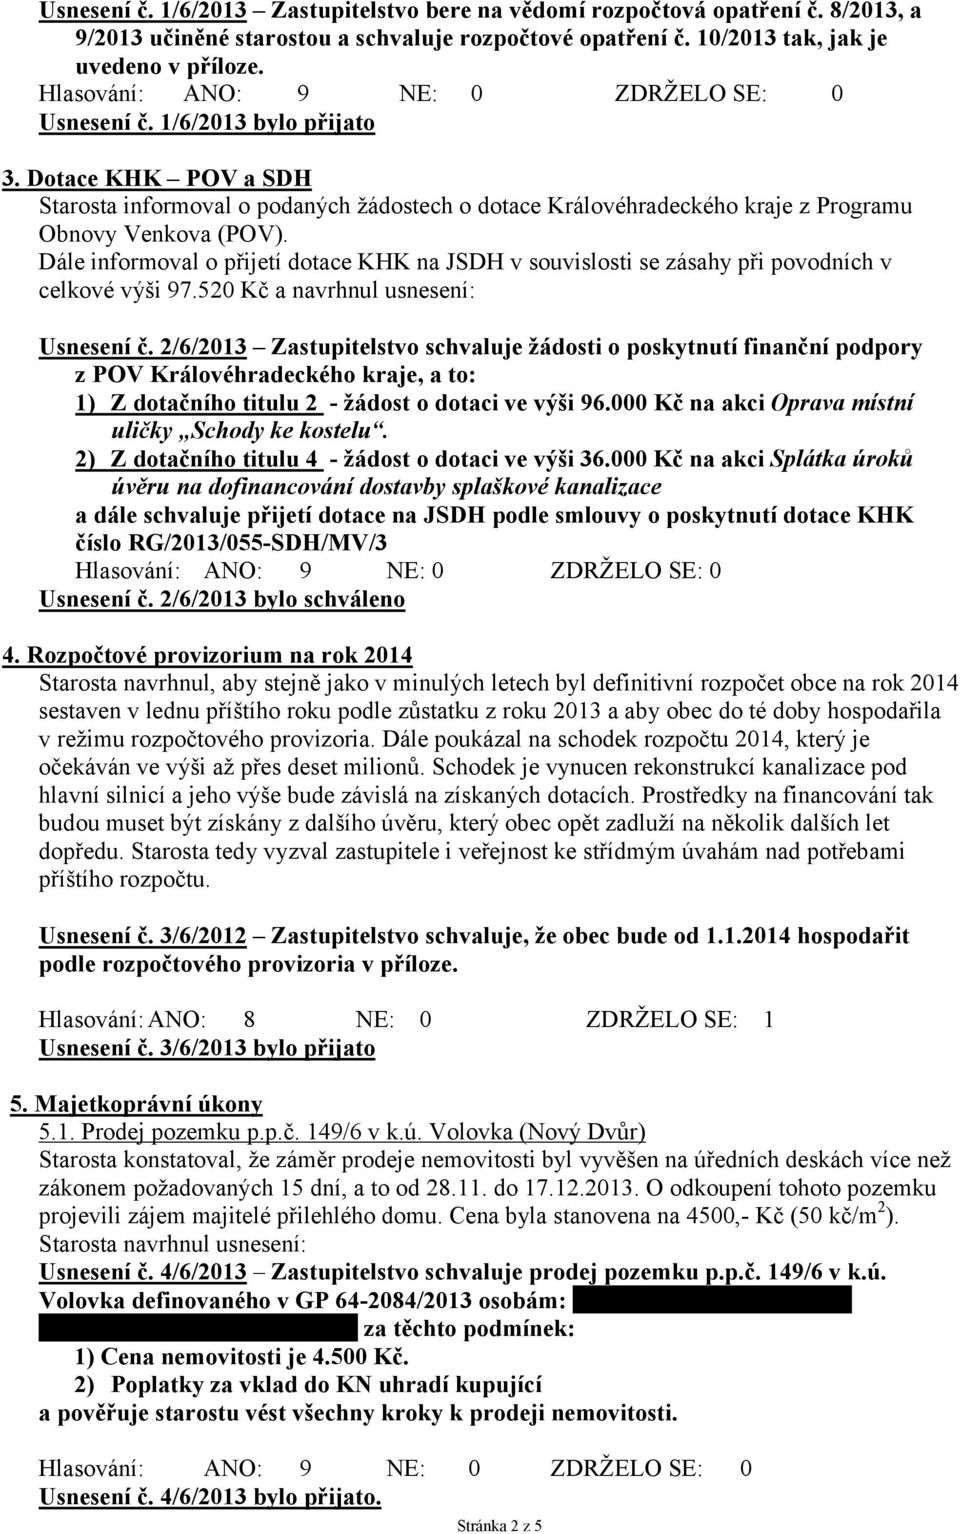 Dotace KHK POV a SDH Starosta informoval o podaných žádostech o dotace Královéhradeckého kraje z Programu Obnovy Venkova (POV).